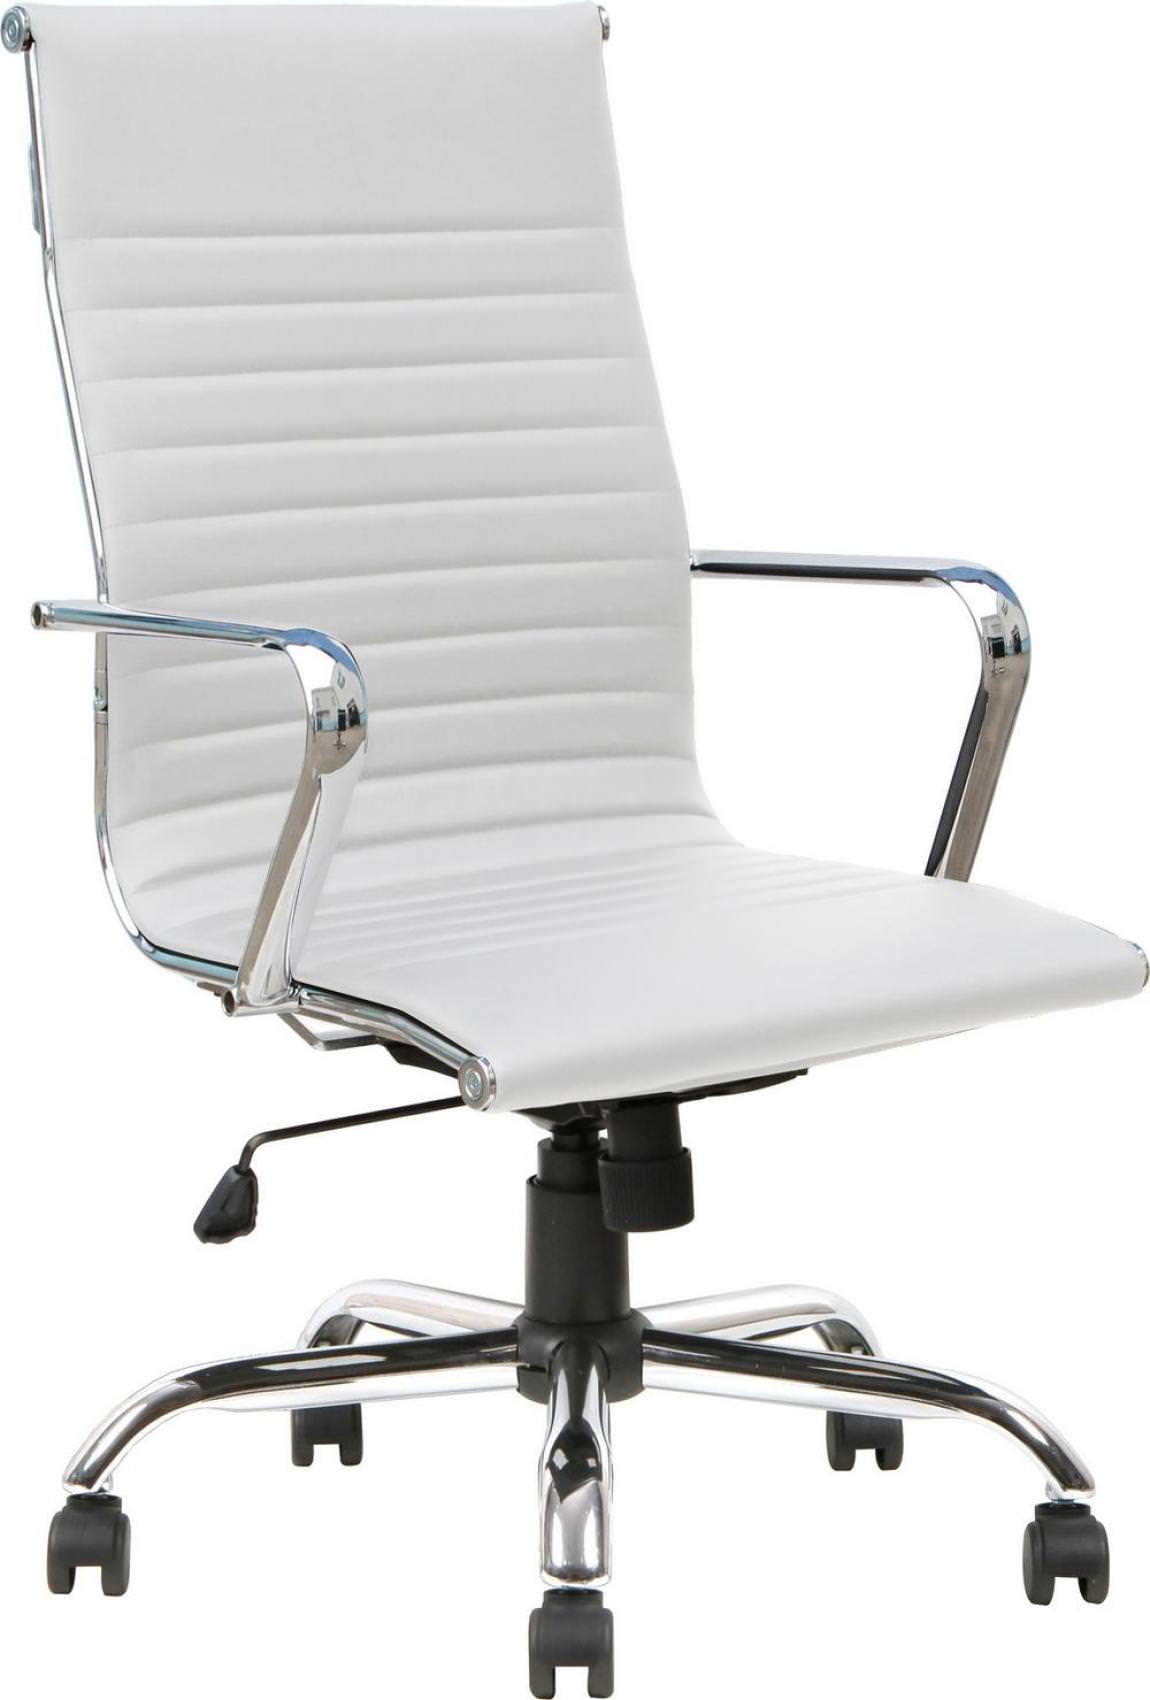 High-Back Modern Swivel Tilt Conference Room Chair